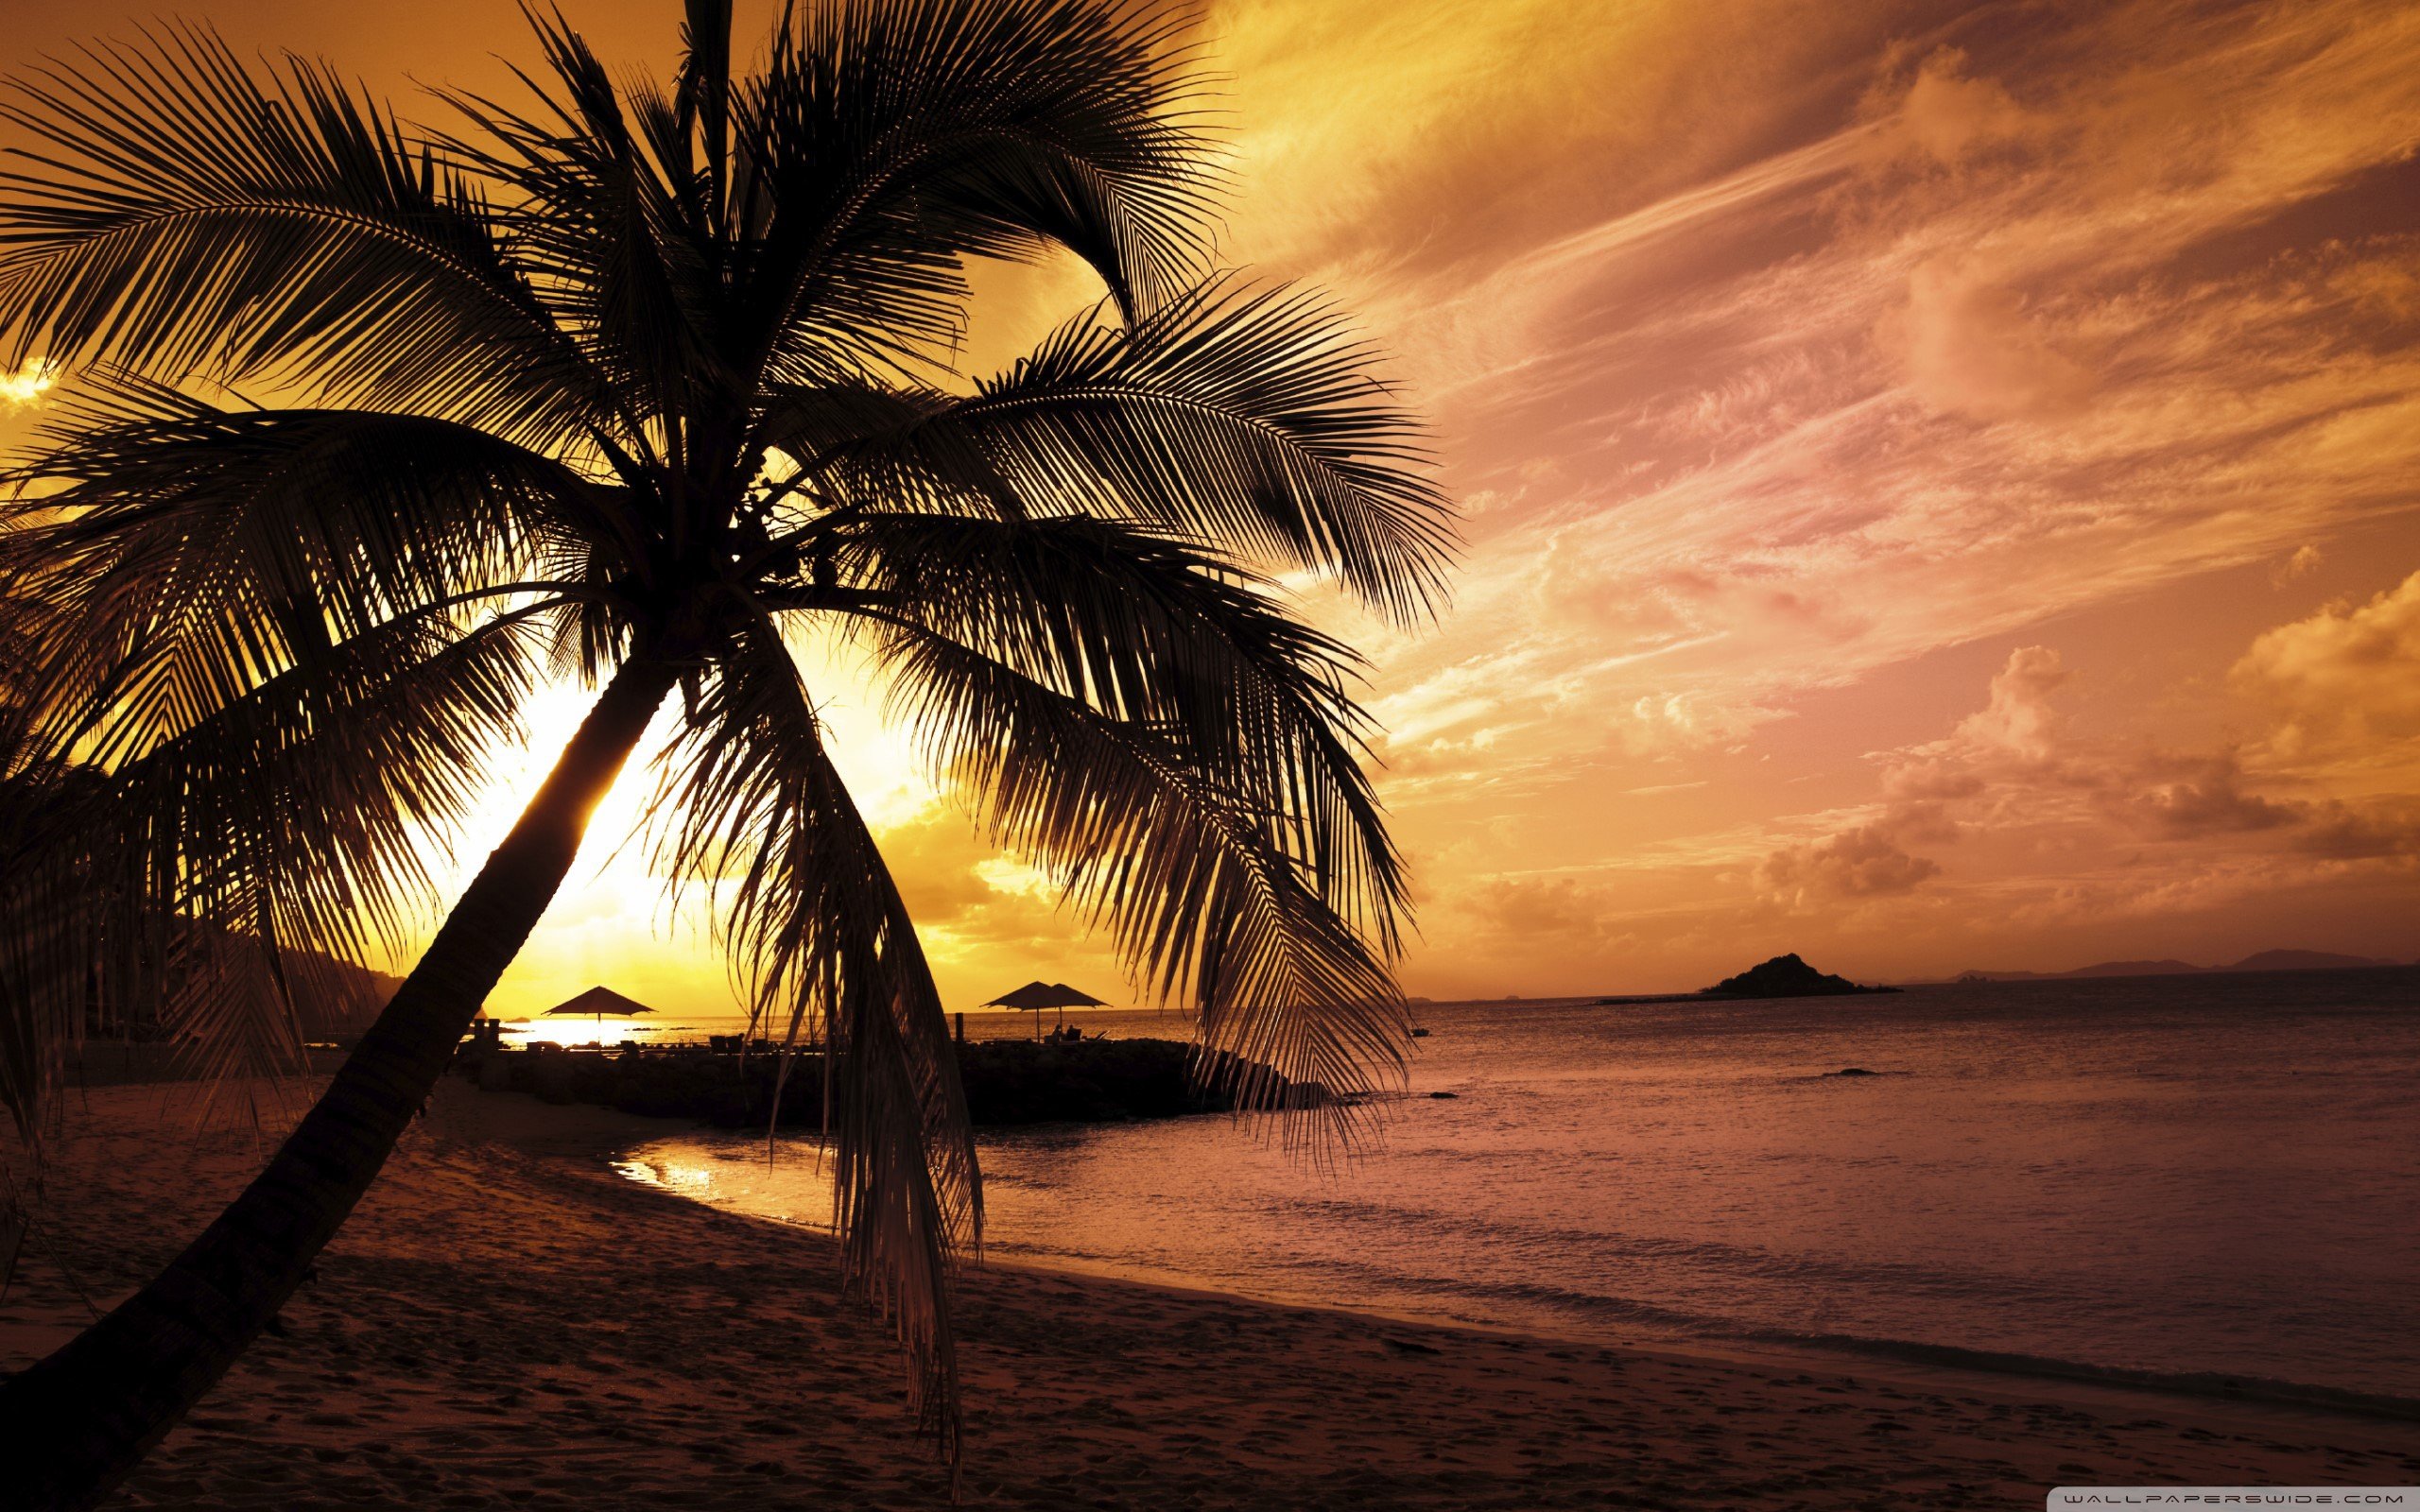 61+] Tropical Island Sunset Wallpaper - WallpaperSafari